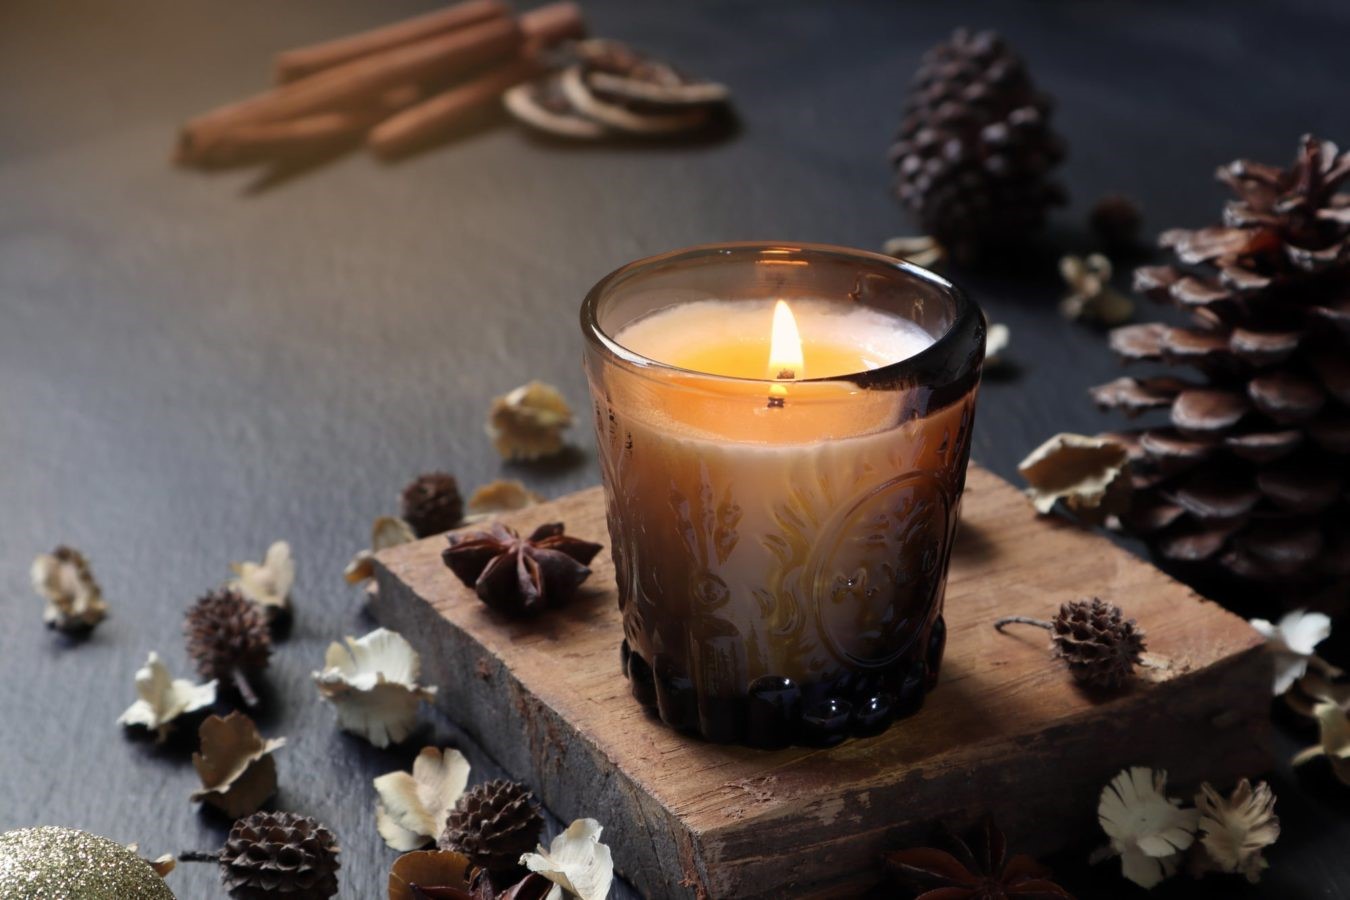  رعایت نکات ایمنی برای استفاده در شمع در خانه